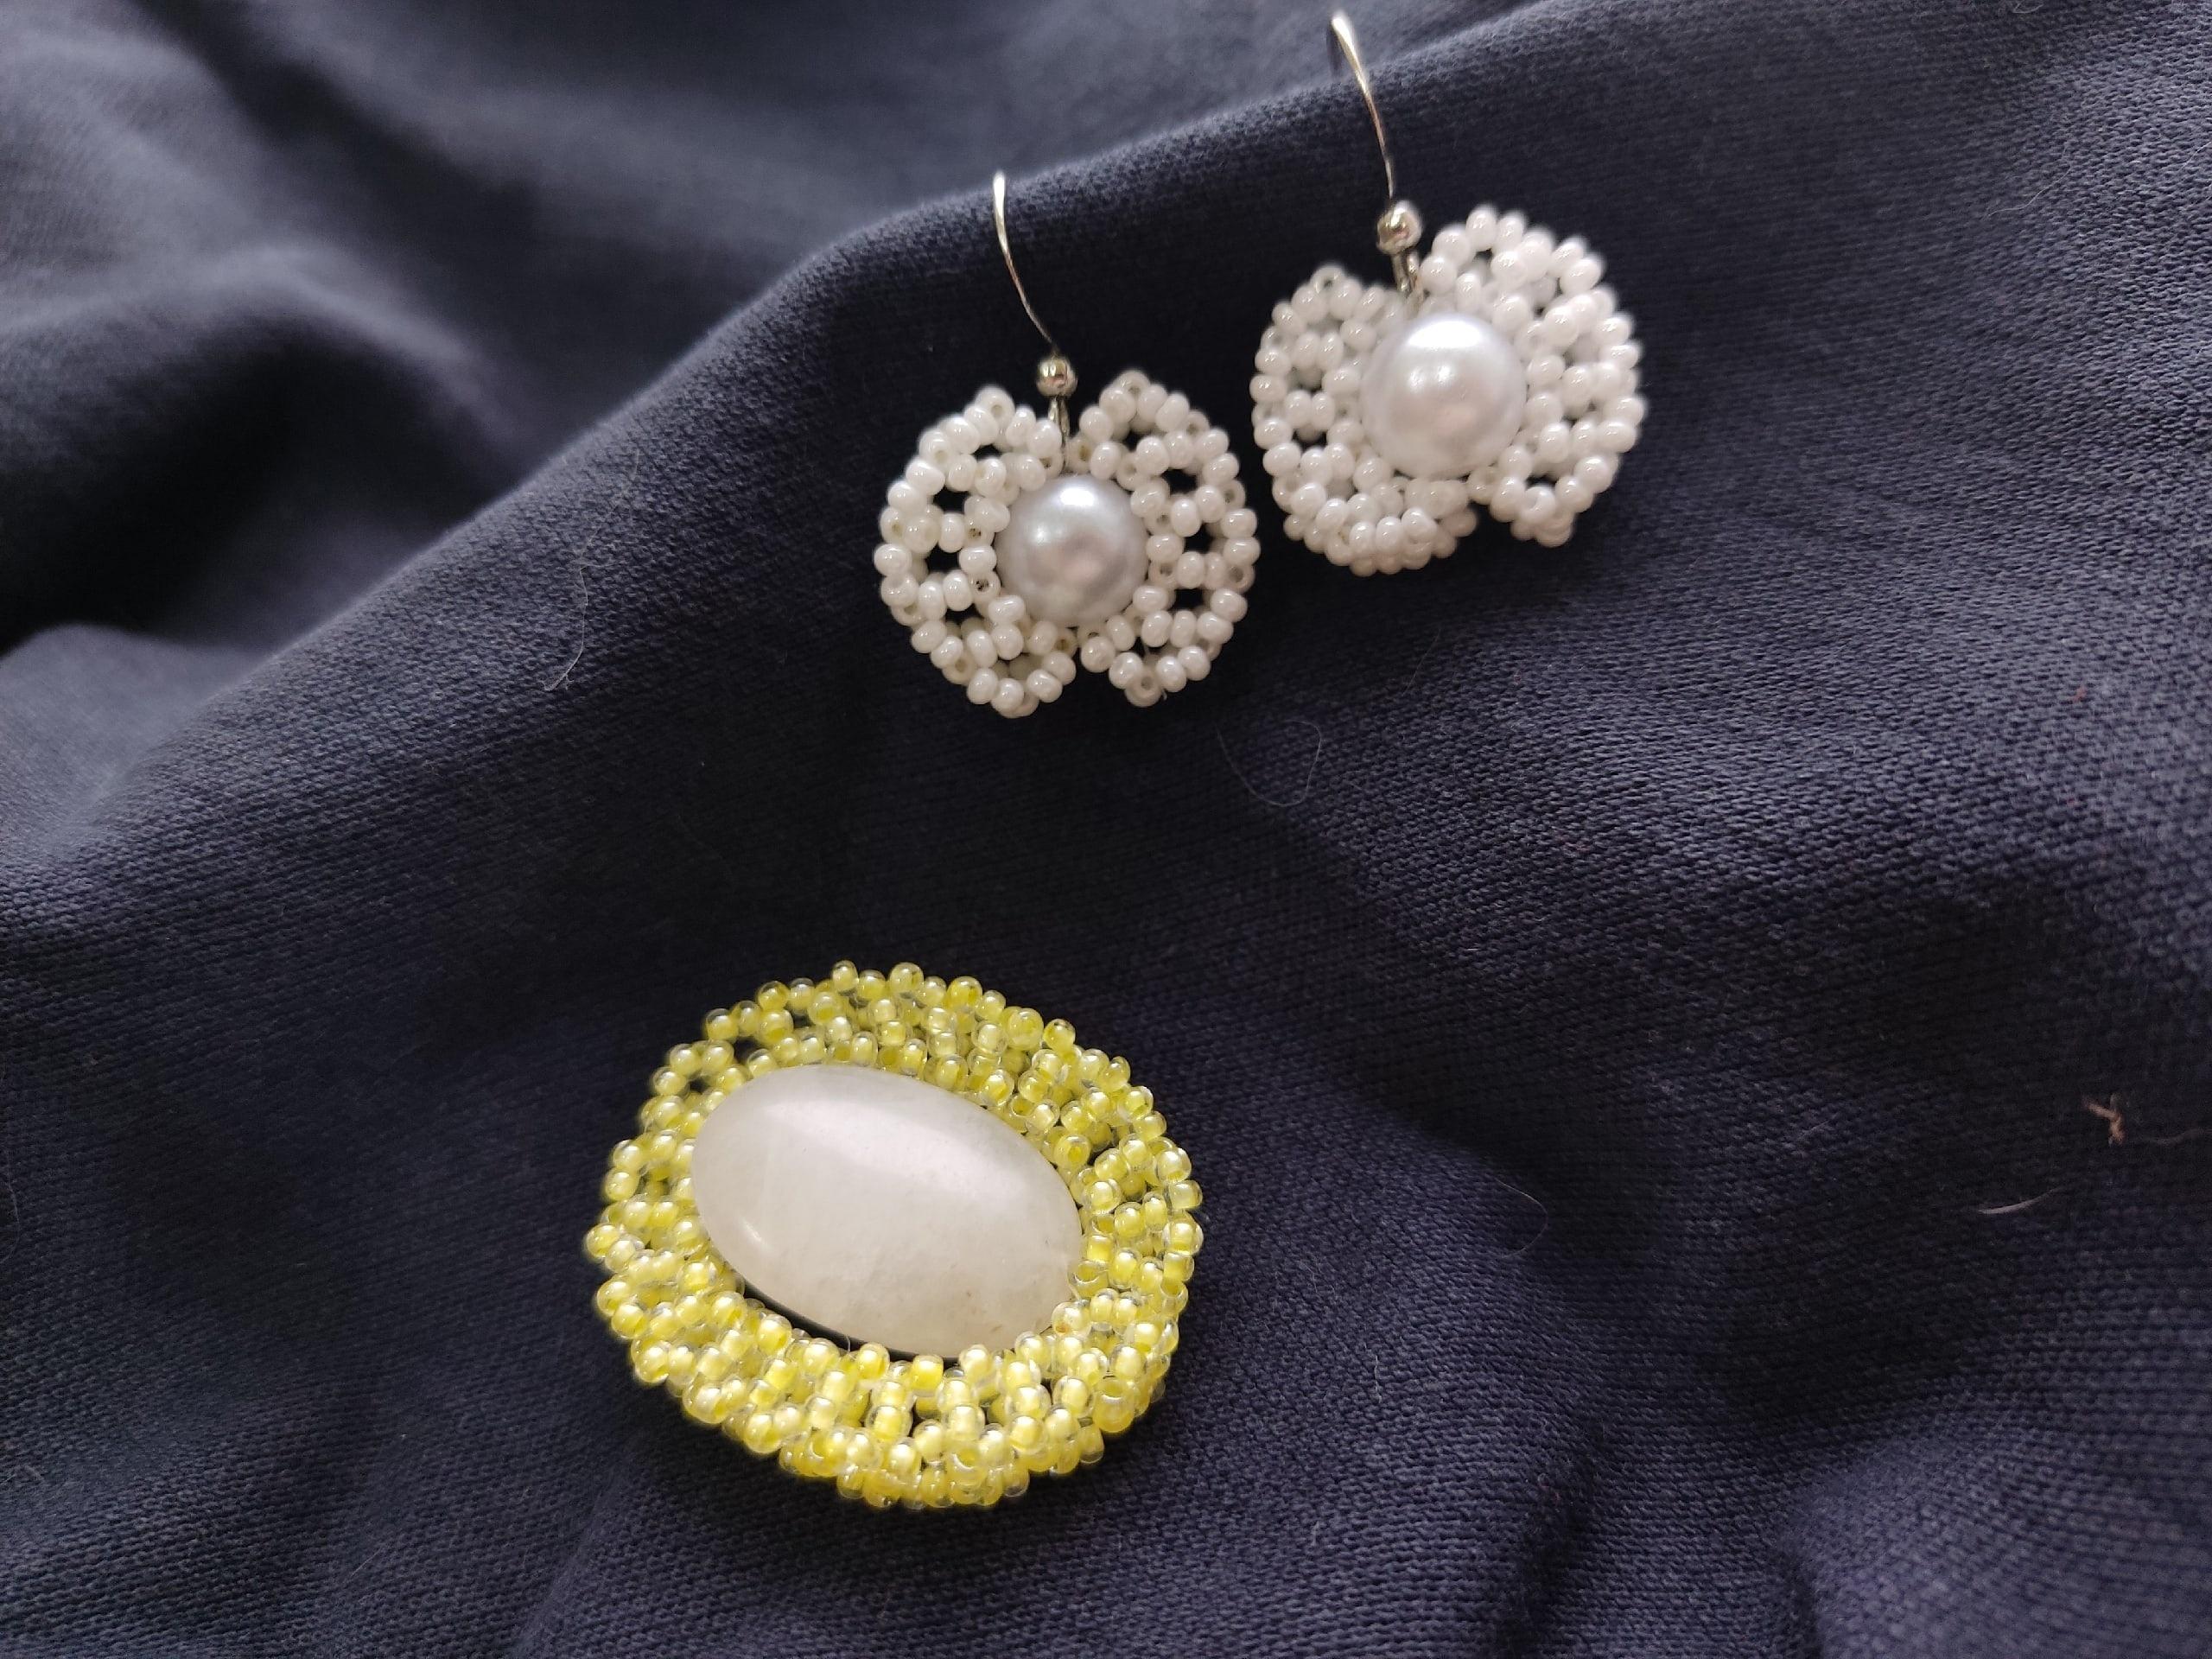 Ожерелье из бисера своими руками — как сделать, схемы плетения, мастер класс